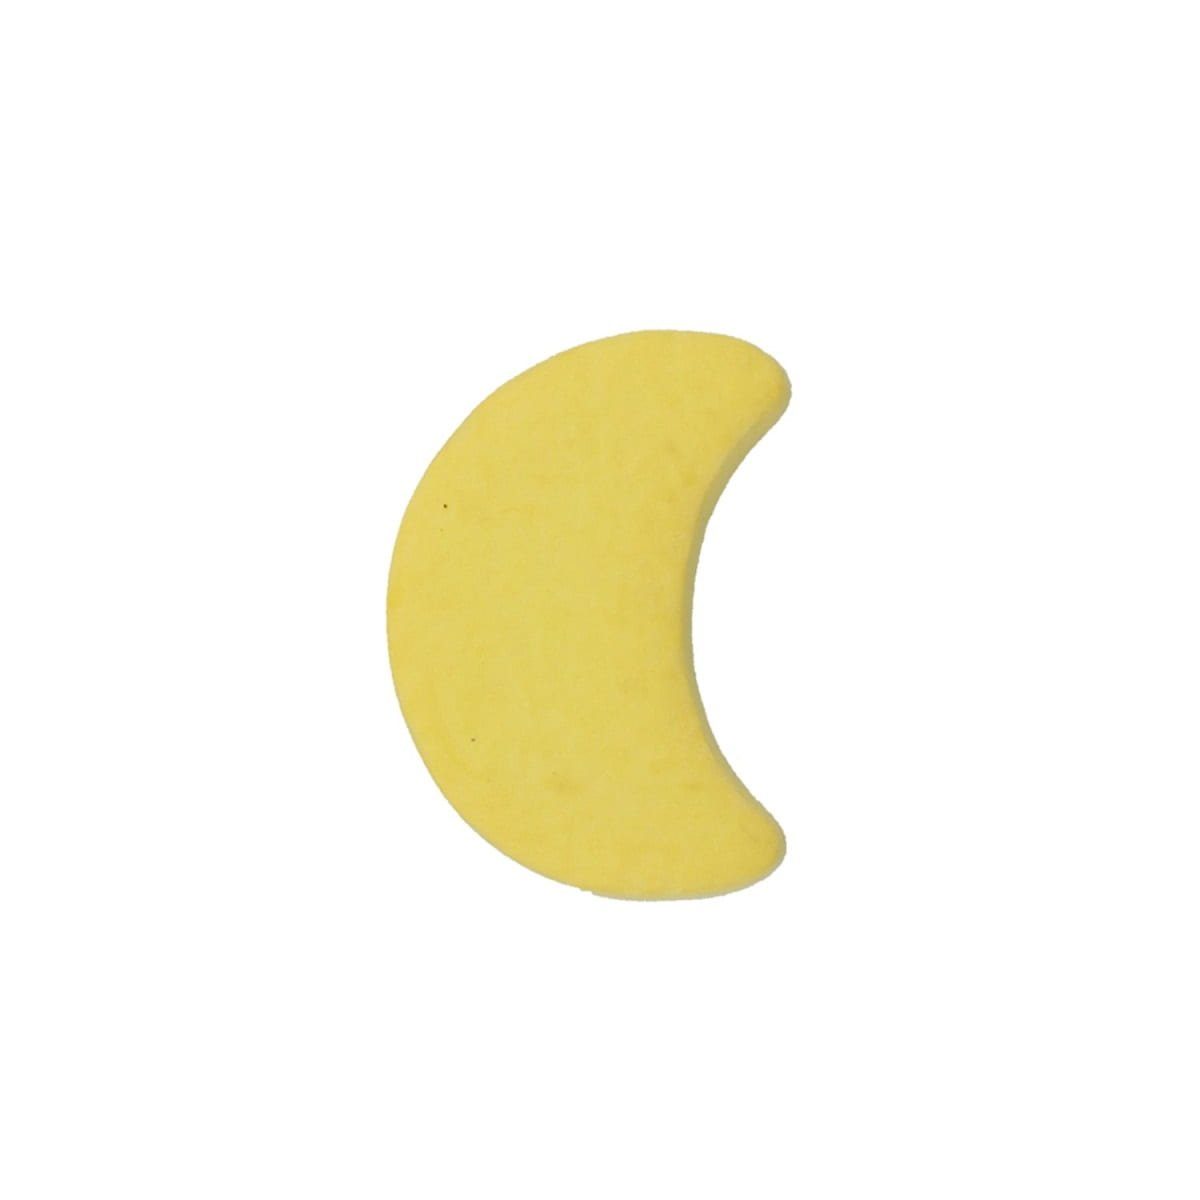 MS Beschläge Türbeschlag Mond Möbelknopf Gelber Kindermöbelknopf Modell